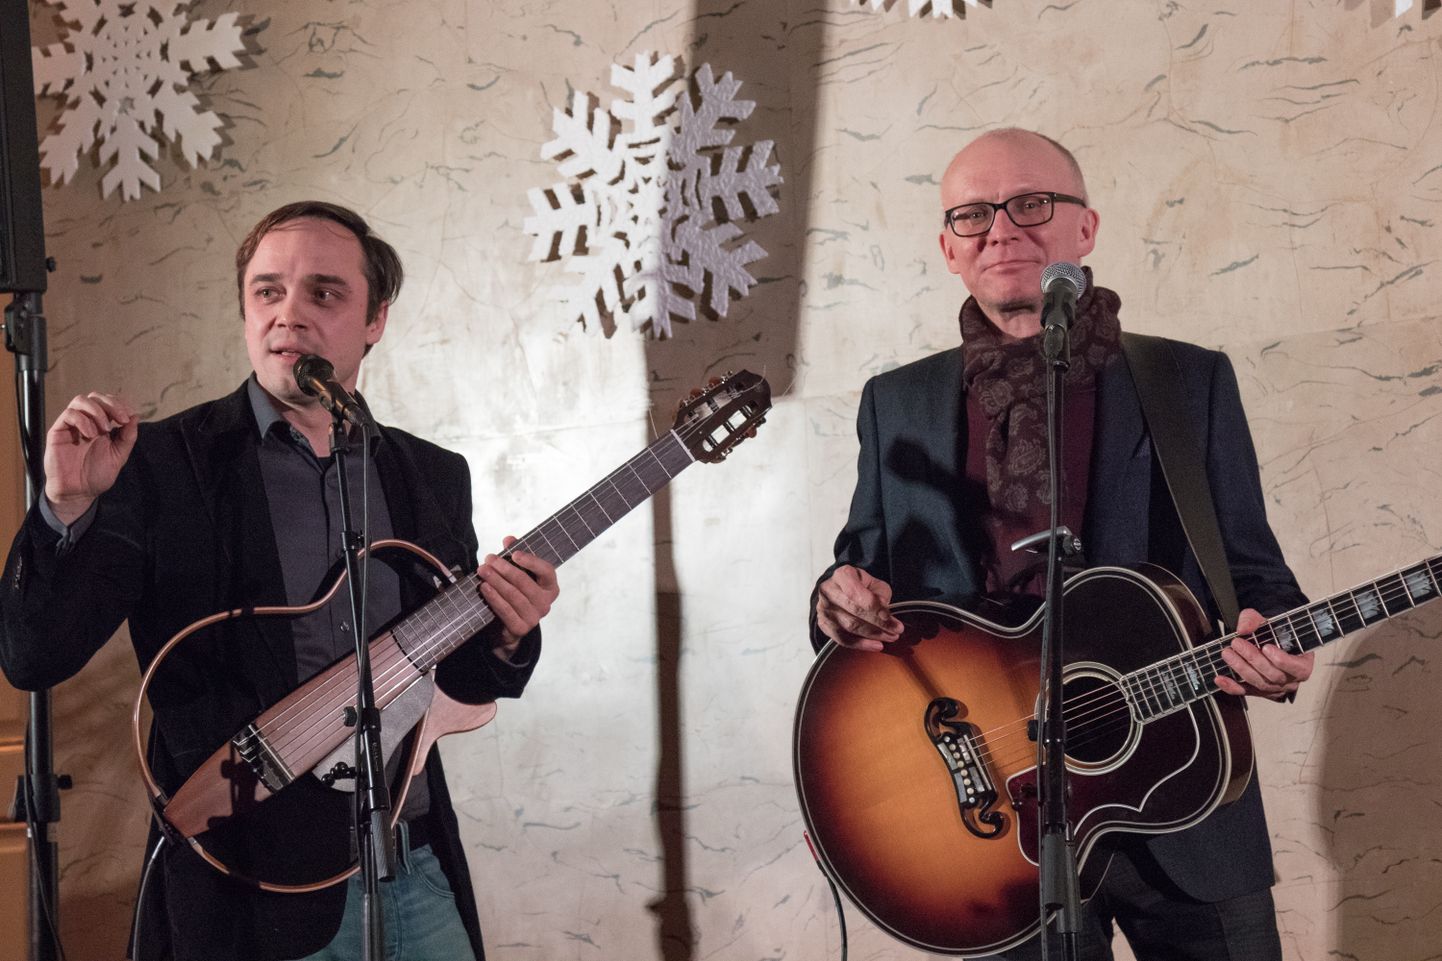 Jaan Sööt ja Andre Maaker kohtusid lavalaudadel esmakordselt 2016. aasta lõpus Viljandis. Mõnusast koosmusitseerimisest jäi mõlemil tunne, et ühtteist oleks veel teineteisele jagada ja publikule jutustada läbi kahe kitarri kooskõla ja laulude. Nüüd esitlevad nad plaati "Armastusfilm".